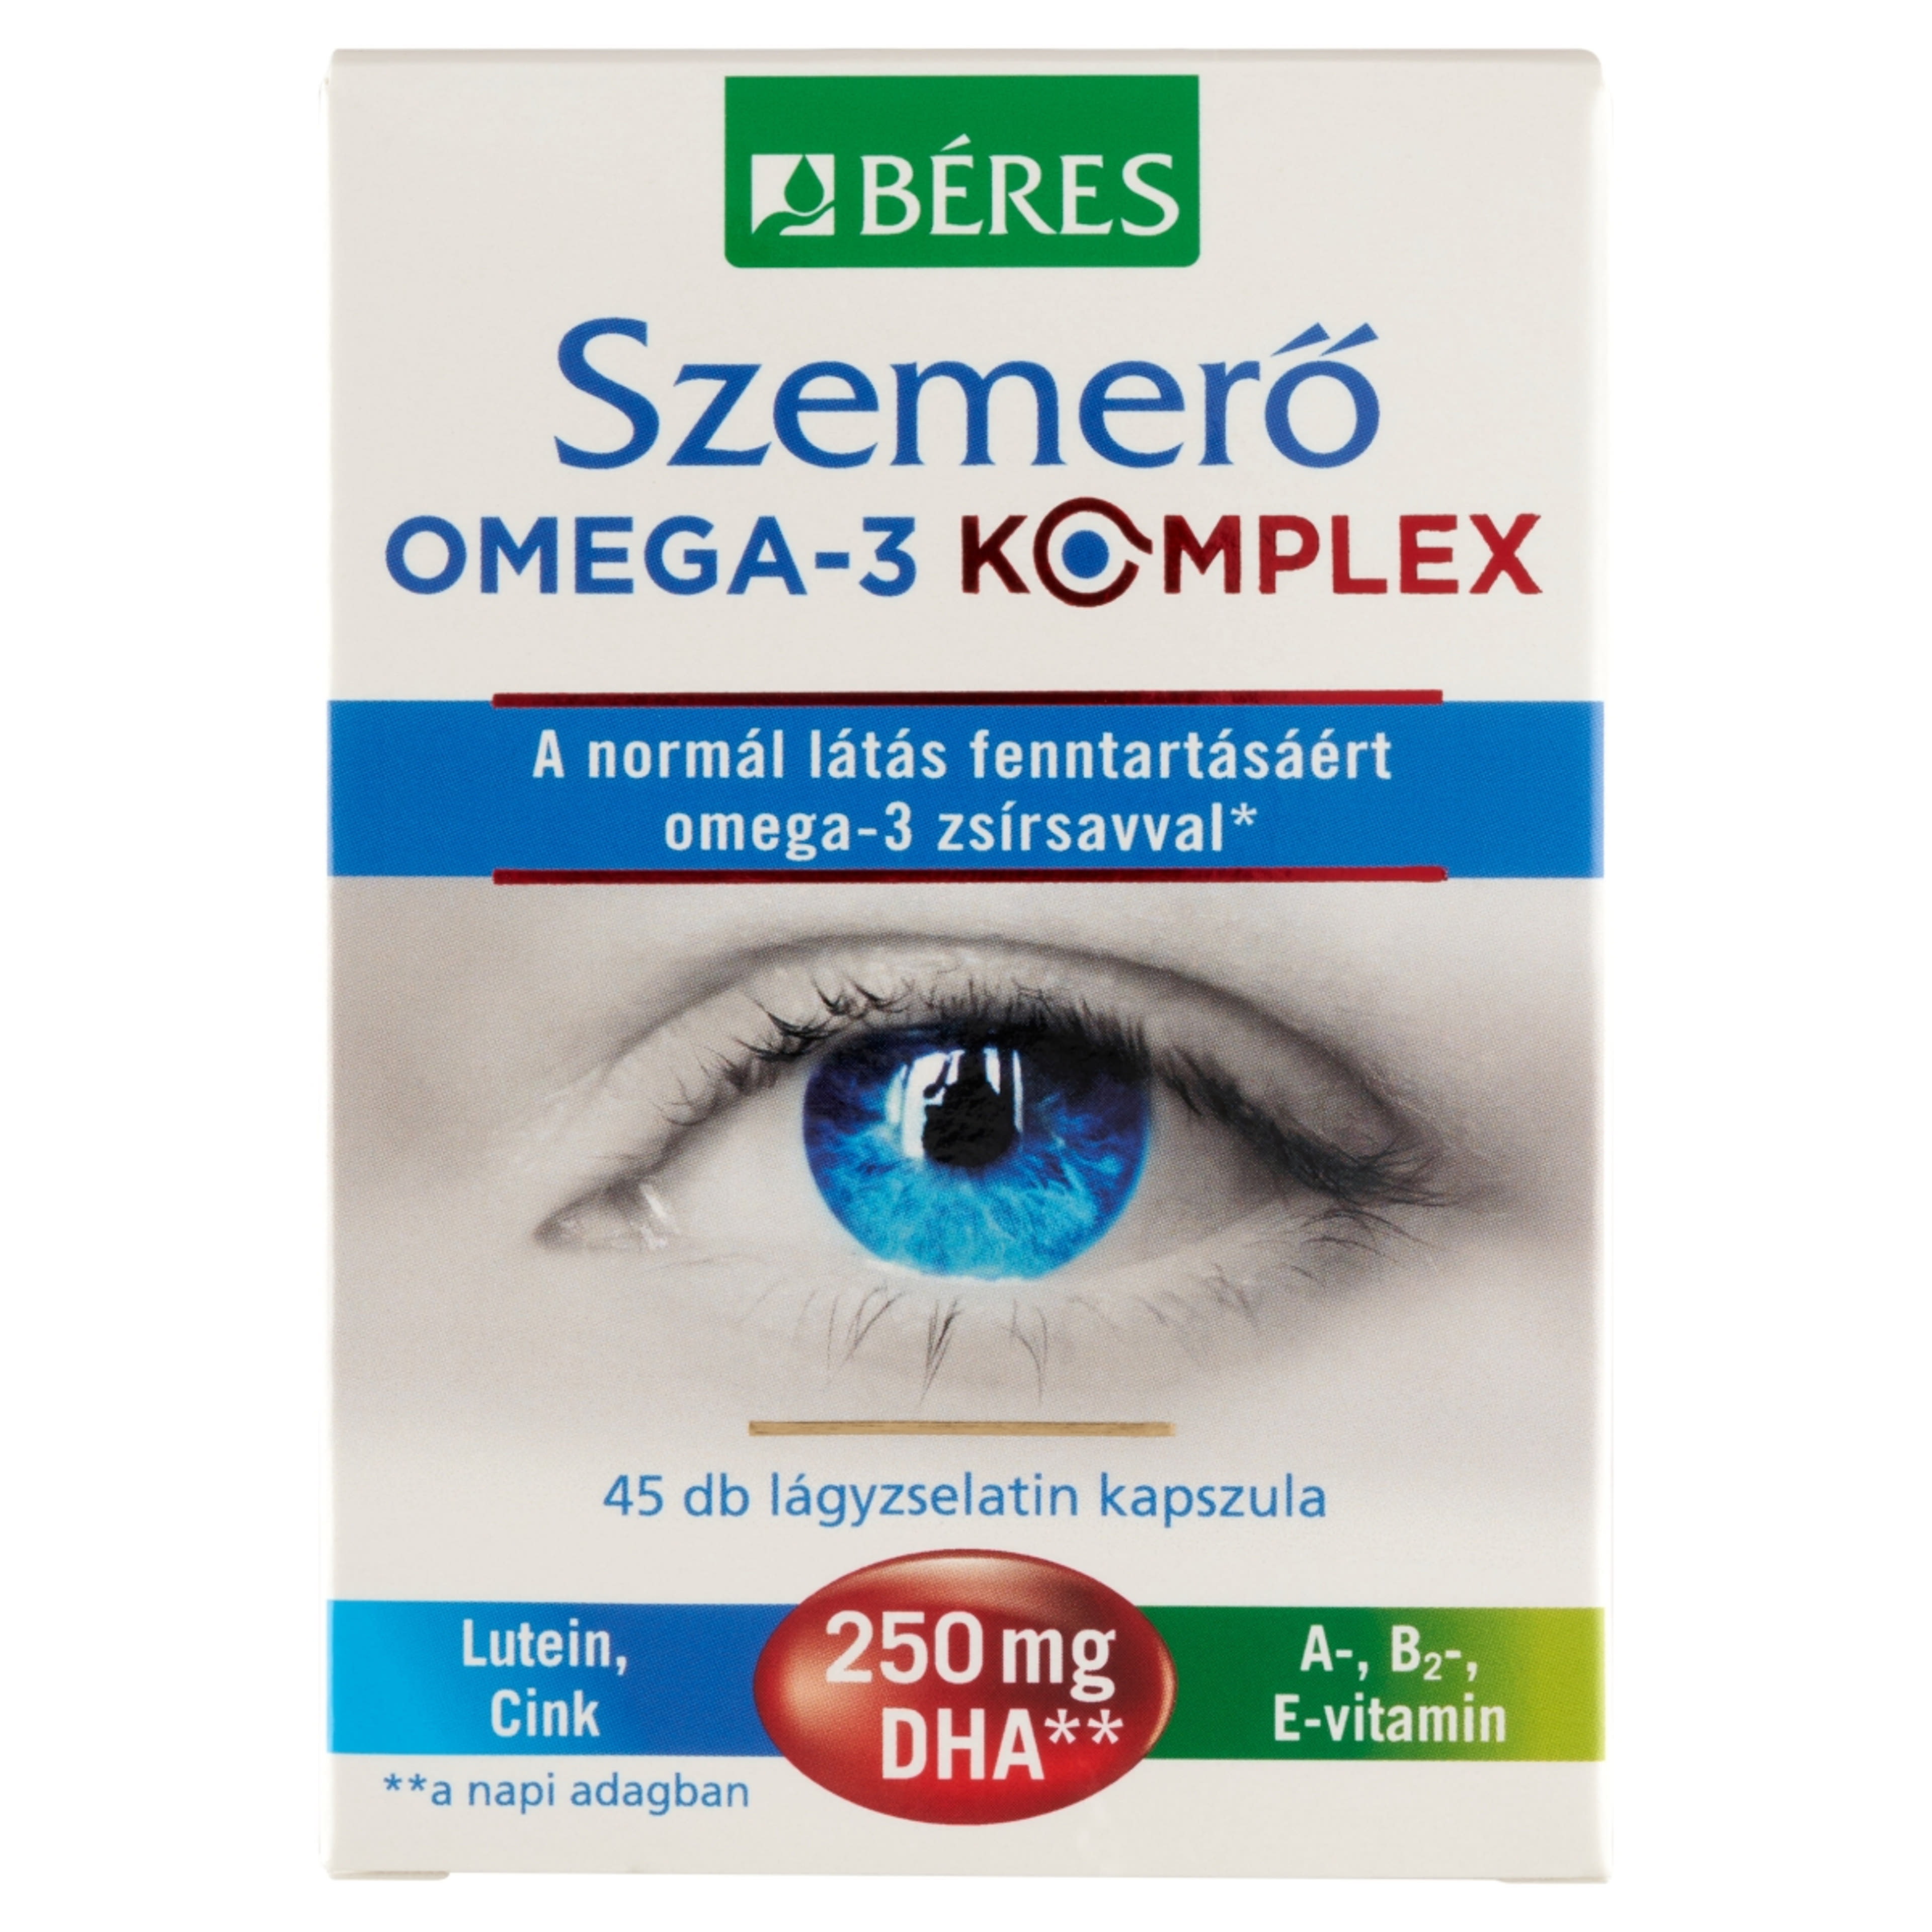 Béres szemerő omega-3 komplex - 45 db